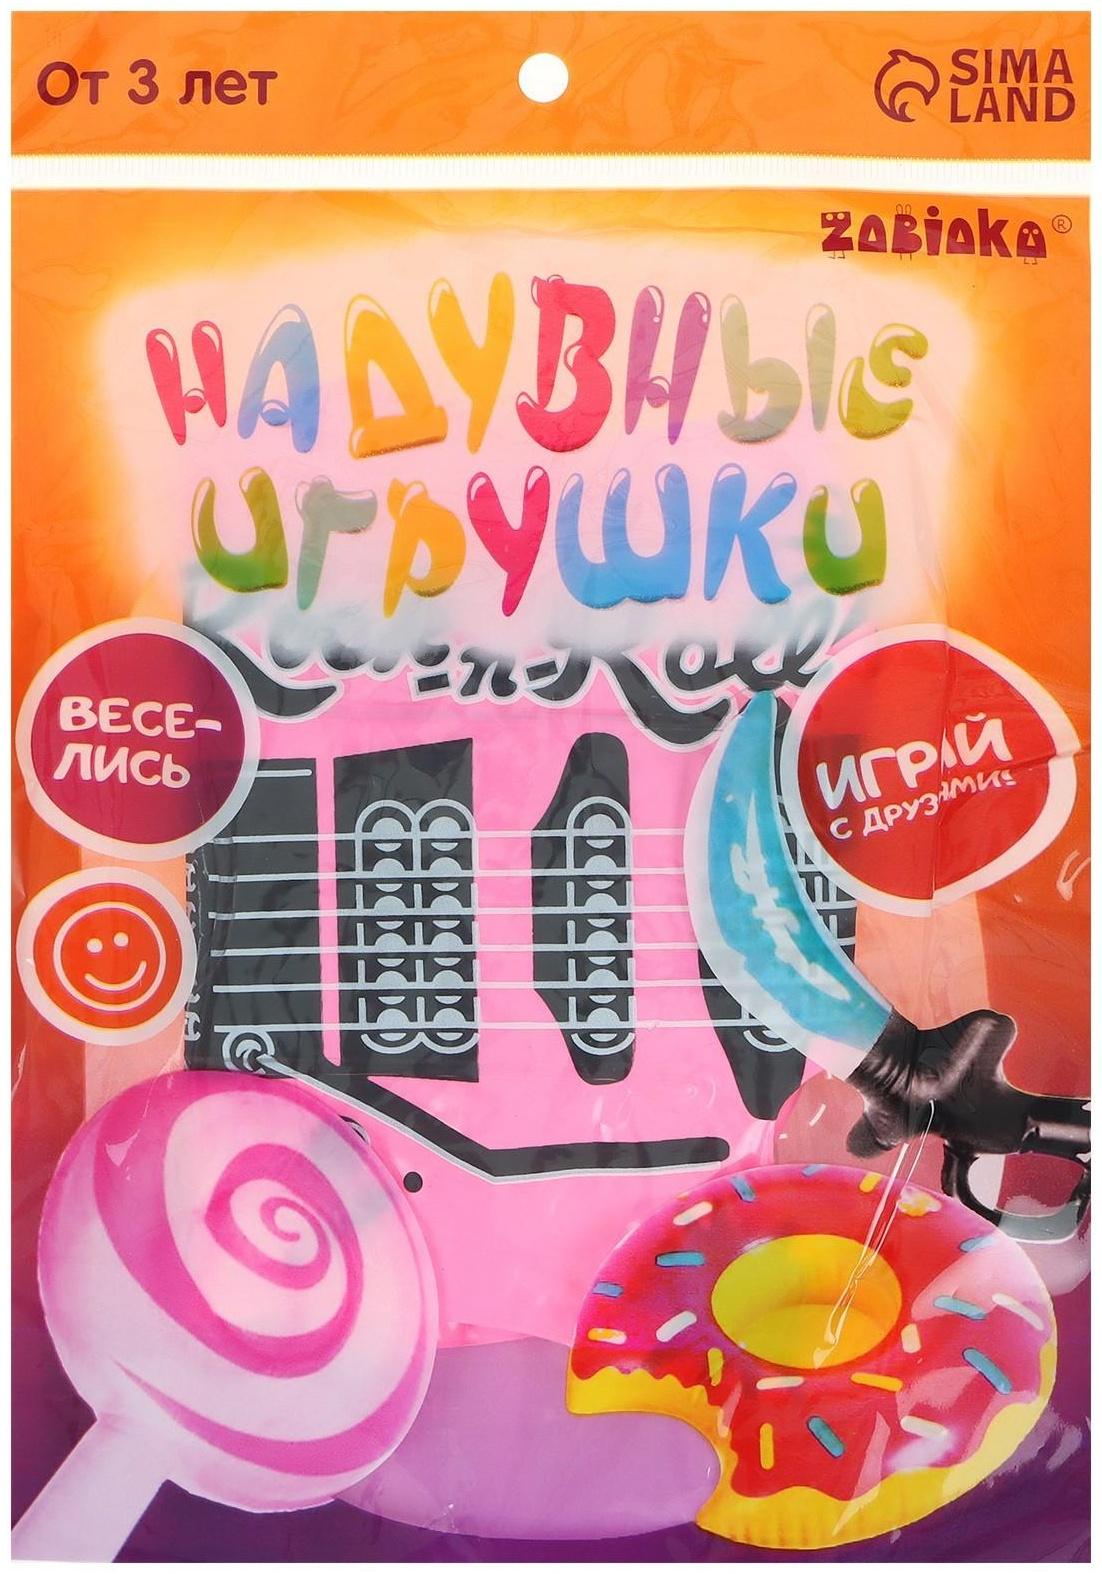 Игрушка надувная «Гитара», 50 см, цвета МИКС